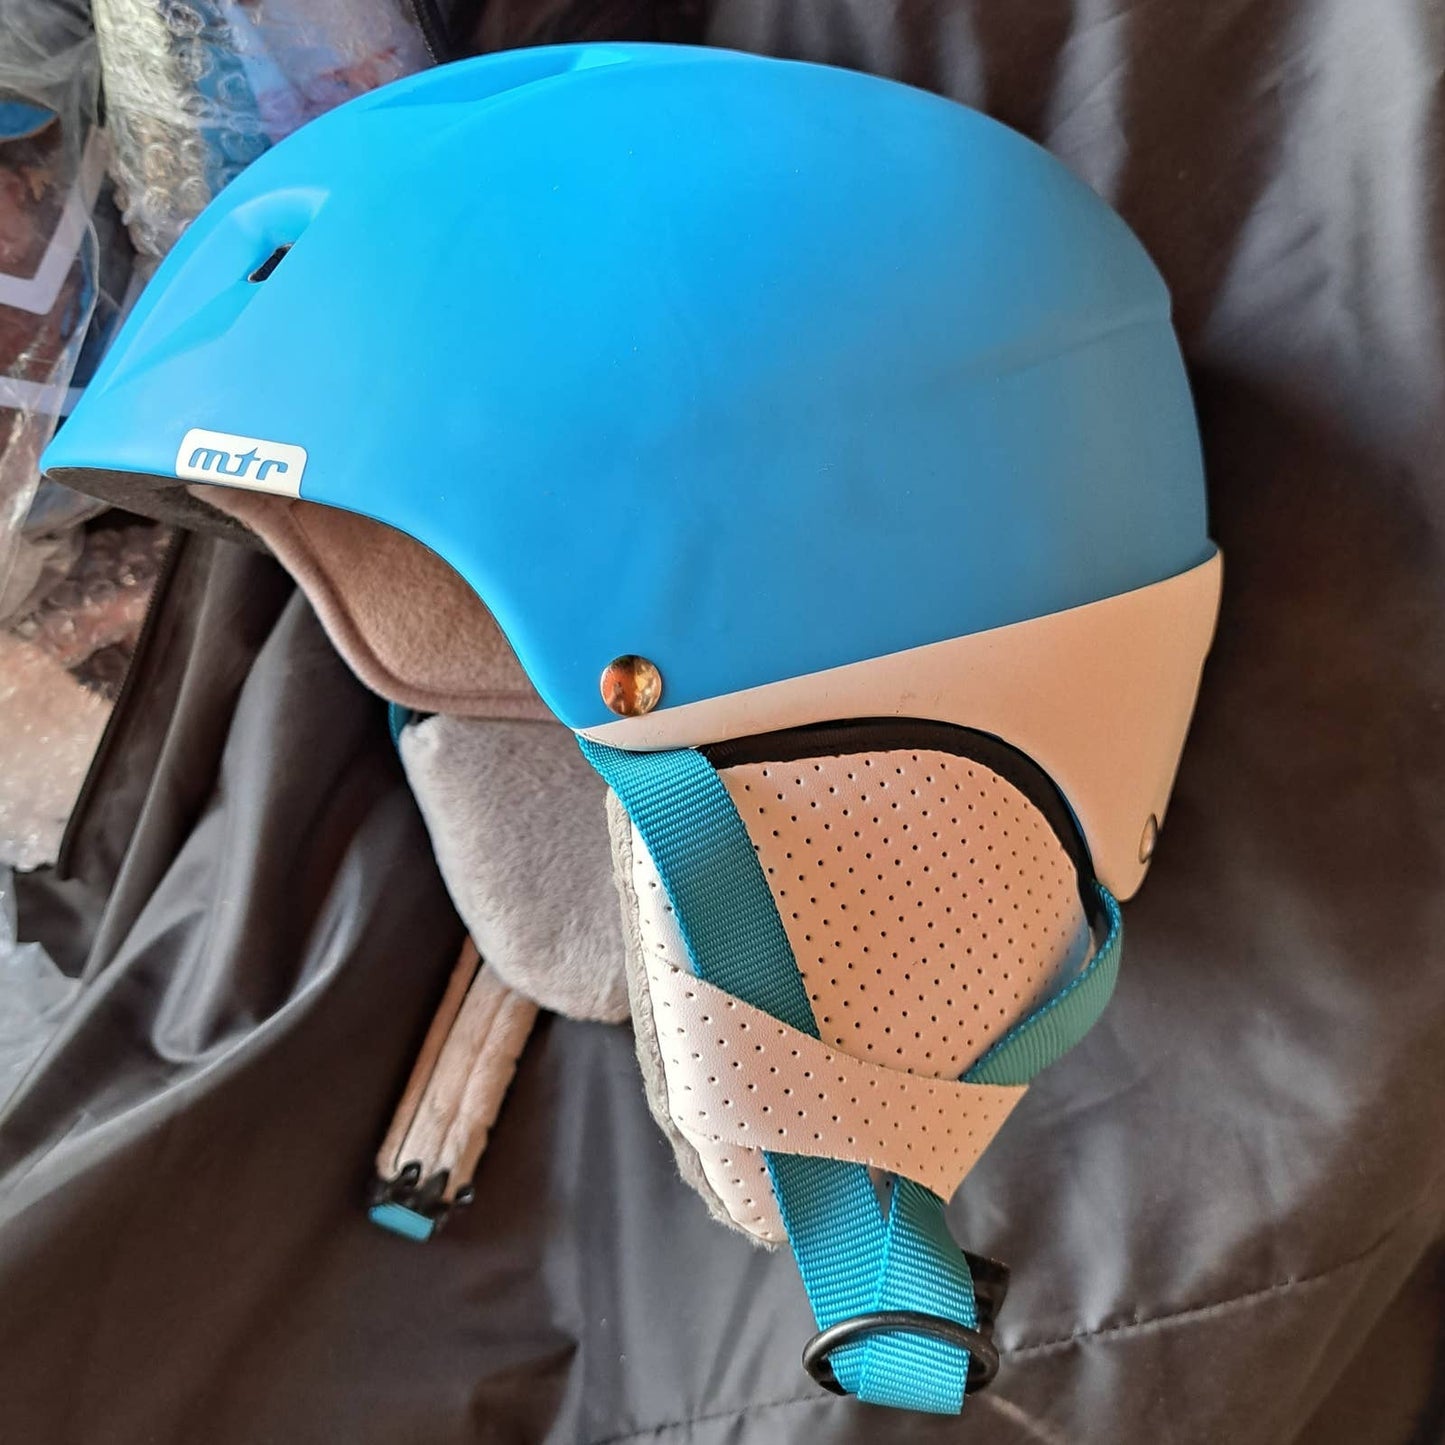 Meteor Snowboard-Ski Helmets with fleece earmuffs inside